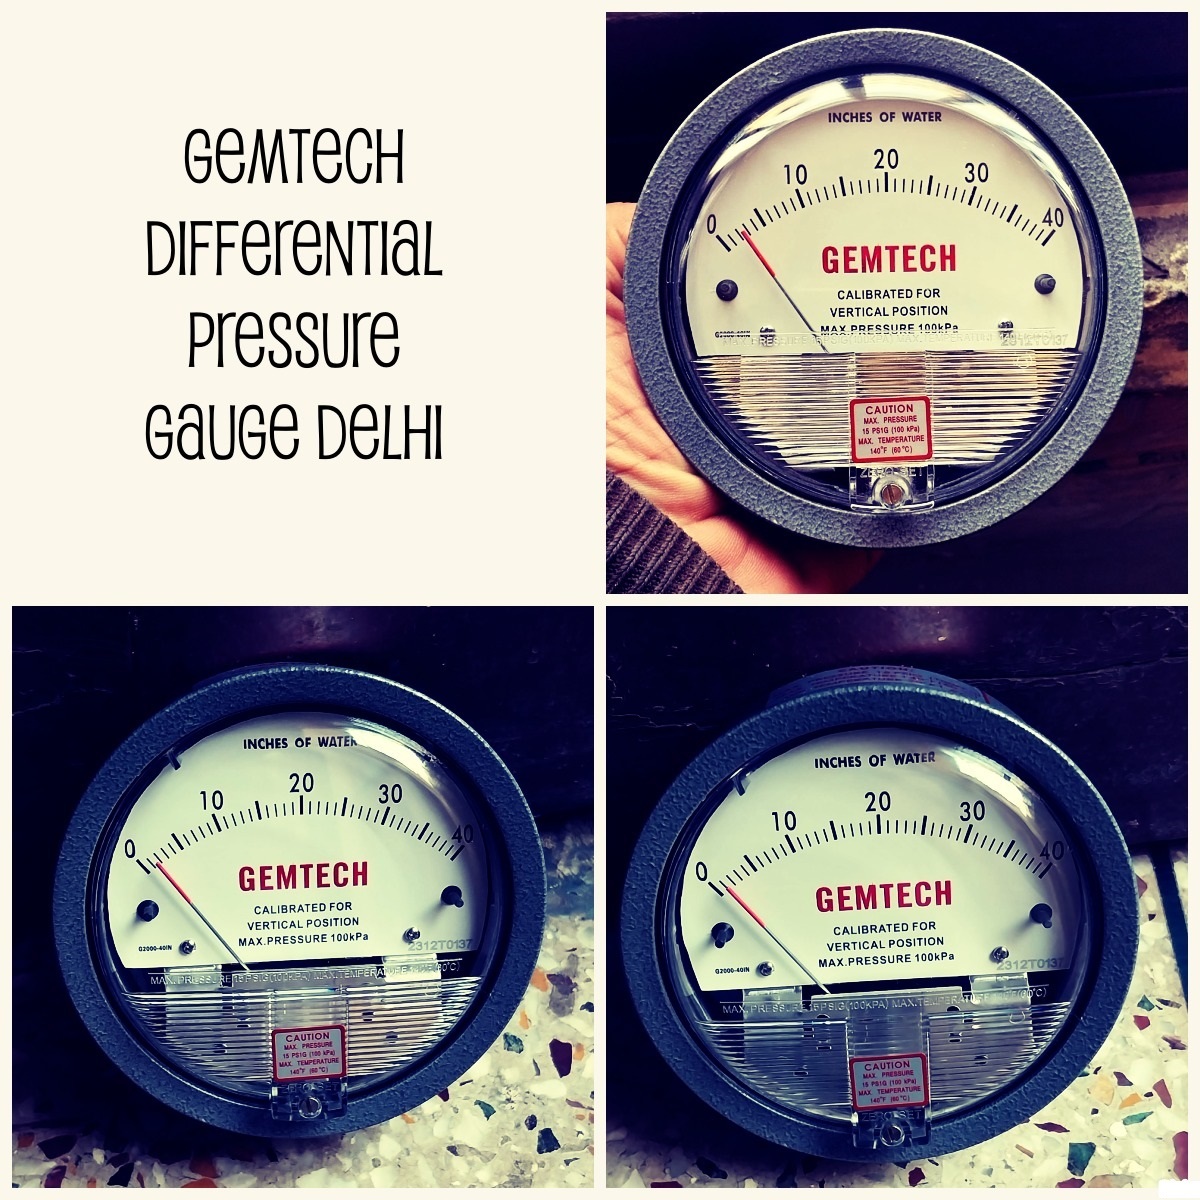 Series G2040 Differential Pressure Gauge GEMTECH Range 0-40 Inch